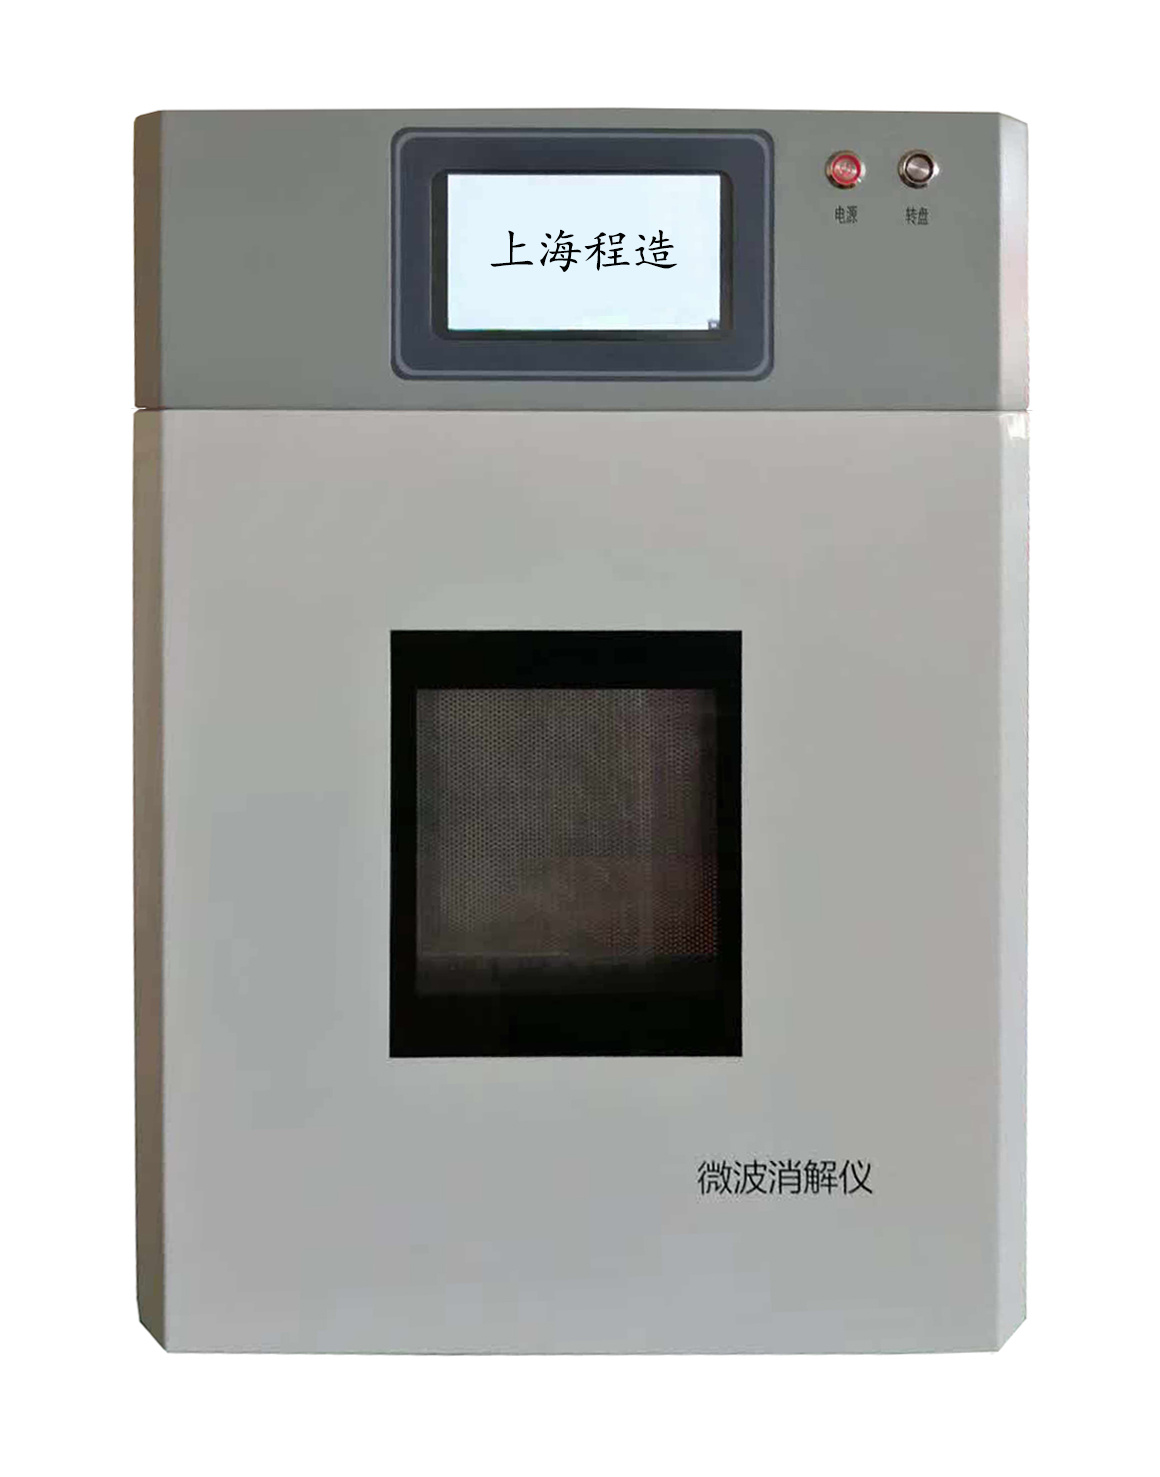 上海程造WBXJ系列智能微波消解仪